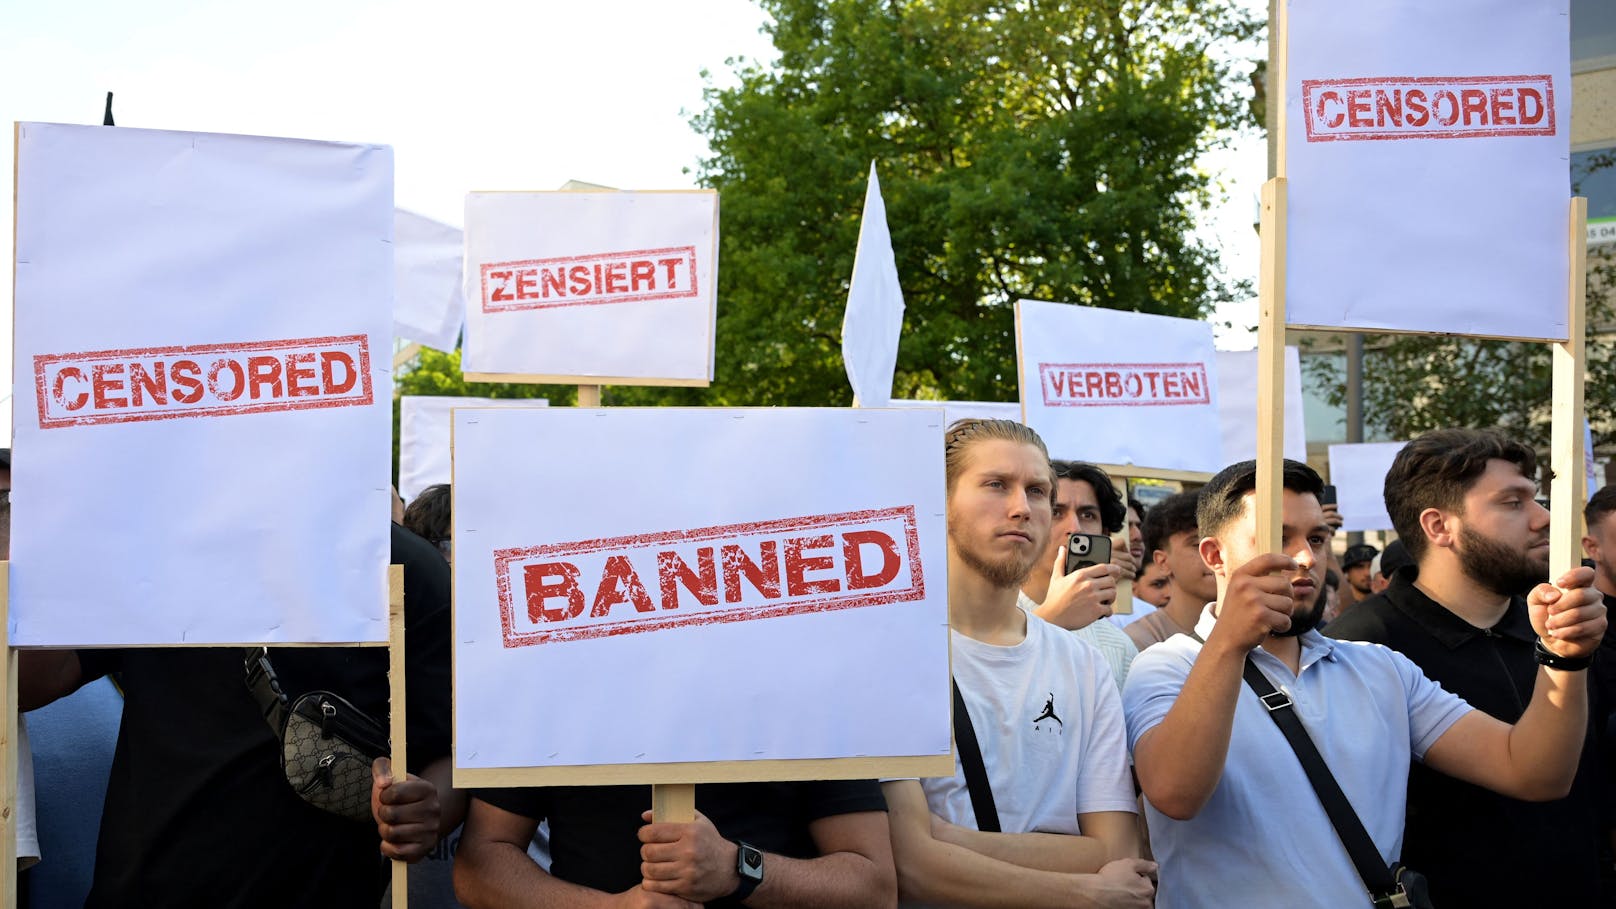 "Kalifat und Zensur" – Erneut Islamistendemo in Hamburg